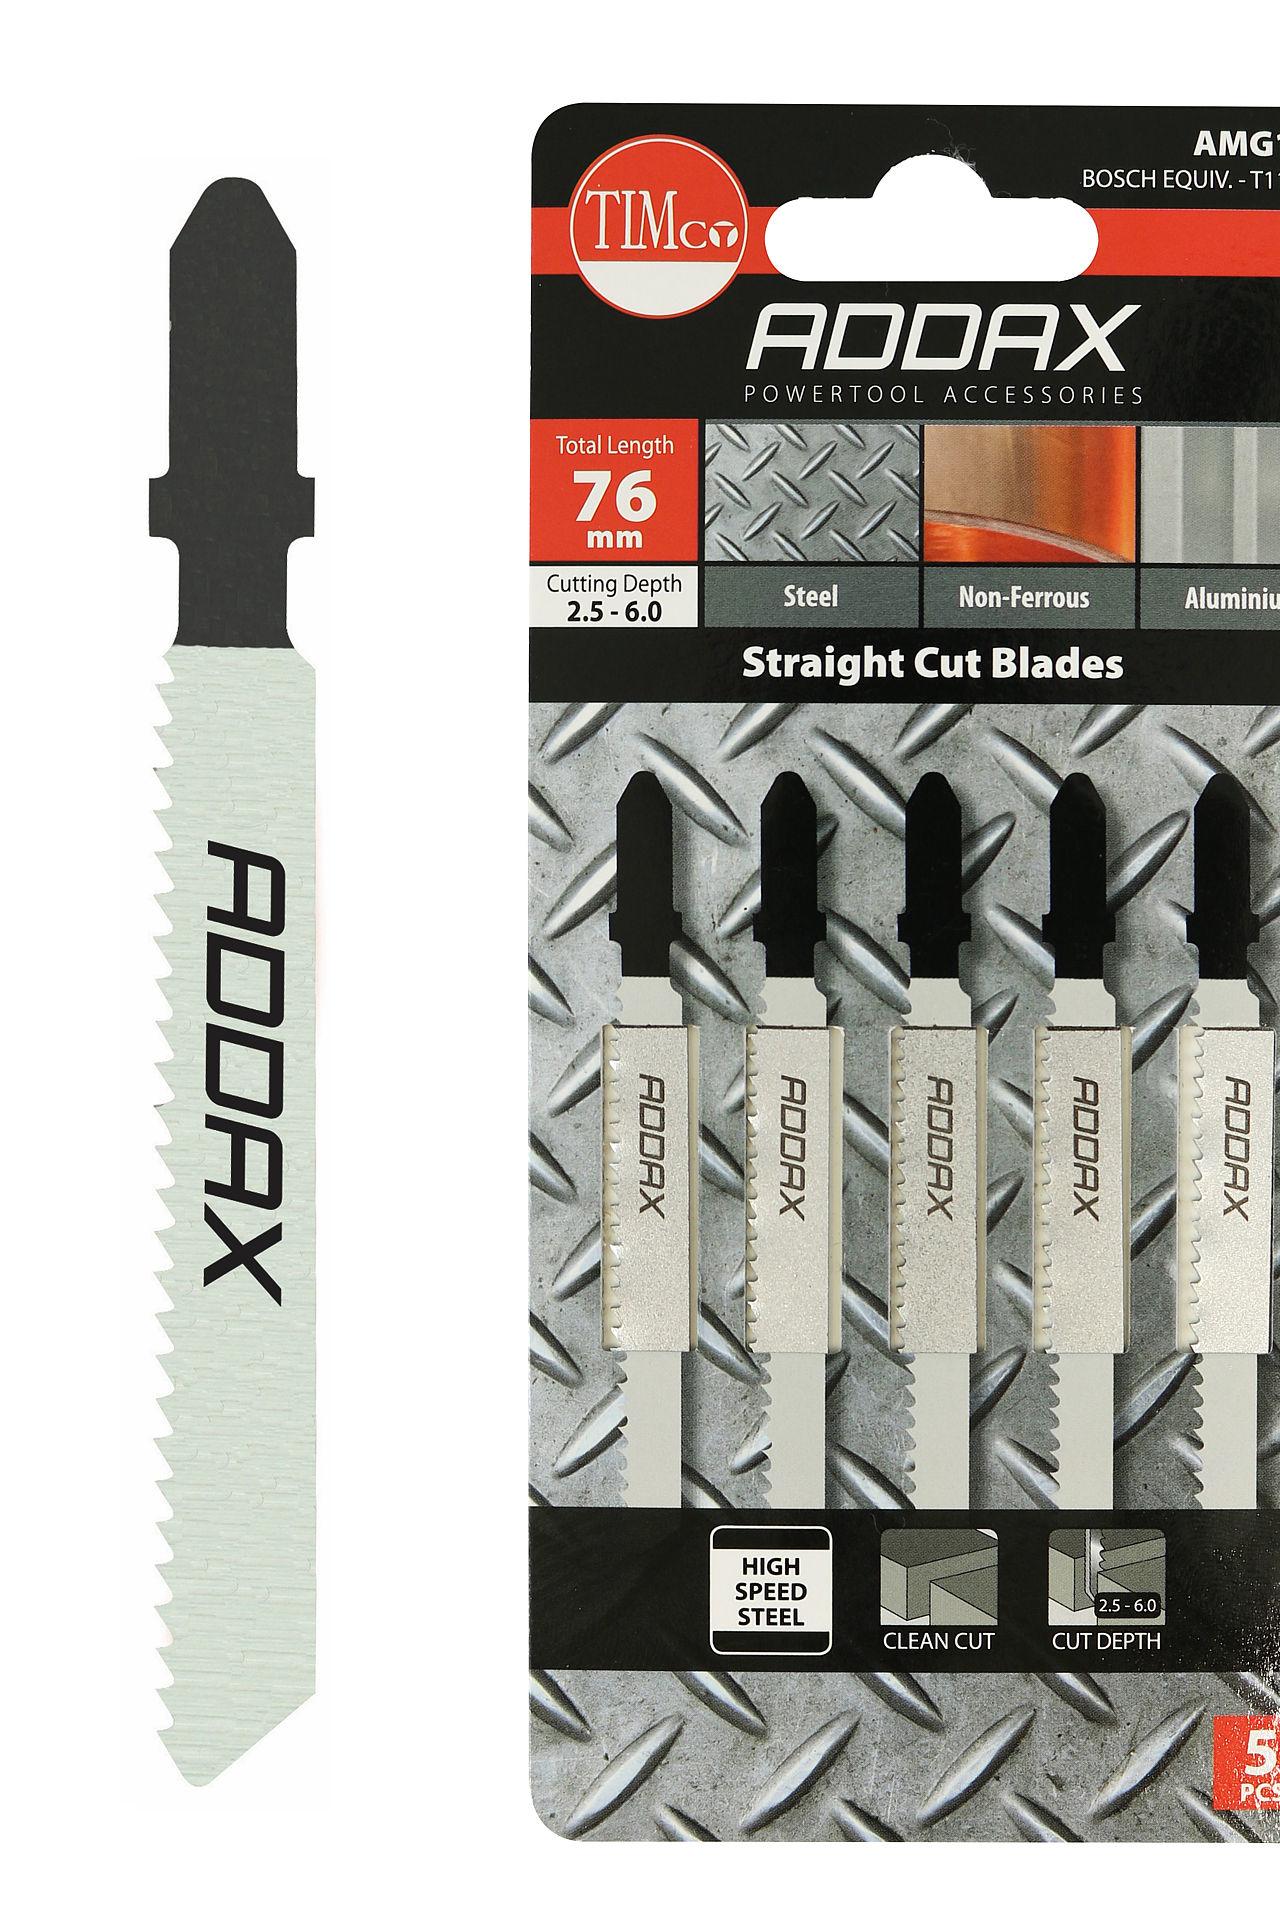 Addax 76mm Jigsaw Blades - Metal Cutting - HSS Blades - 13 Teeth/Inch